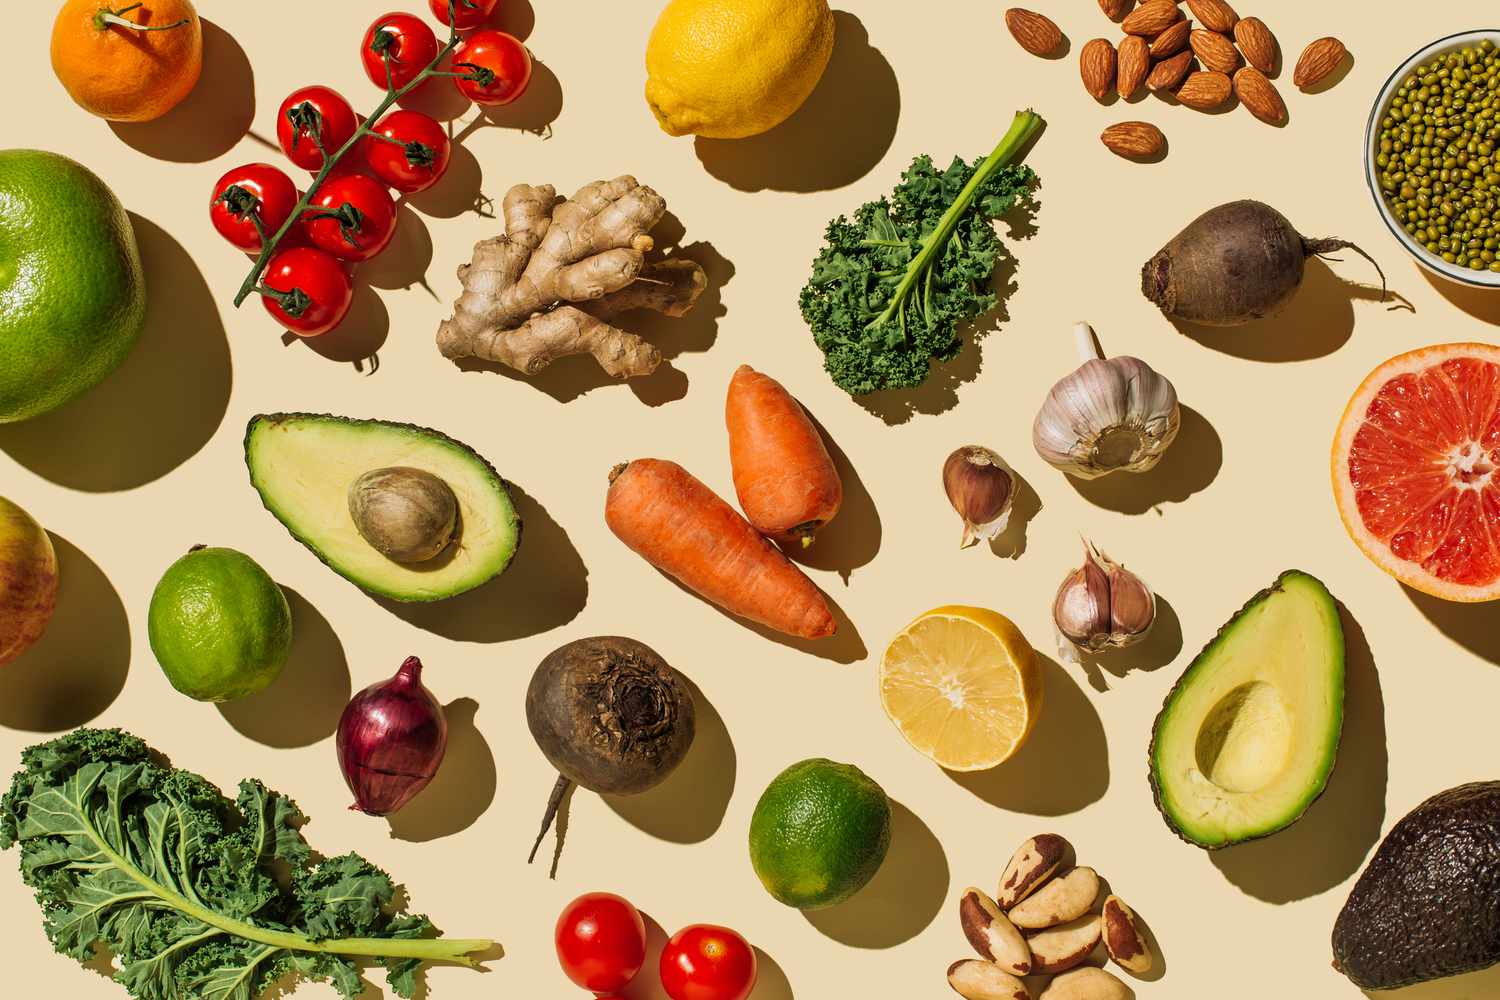 7 maneras fáciles de hacer más nutritivas tus recetas, según una dietista